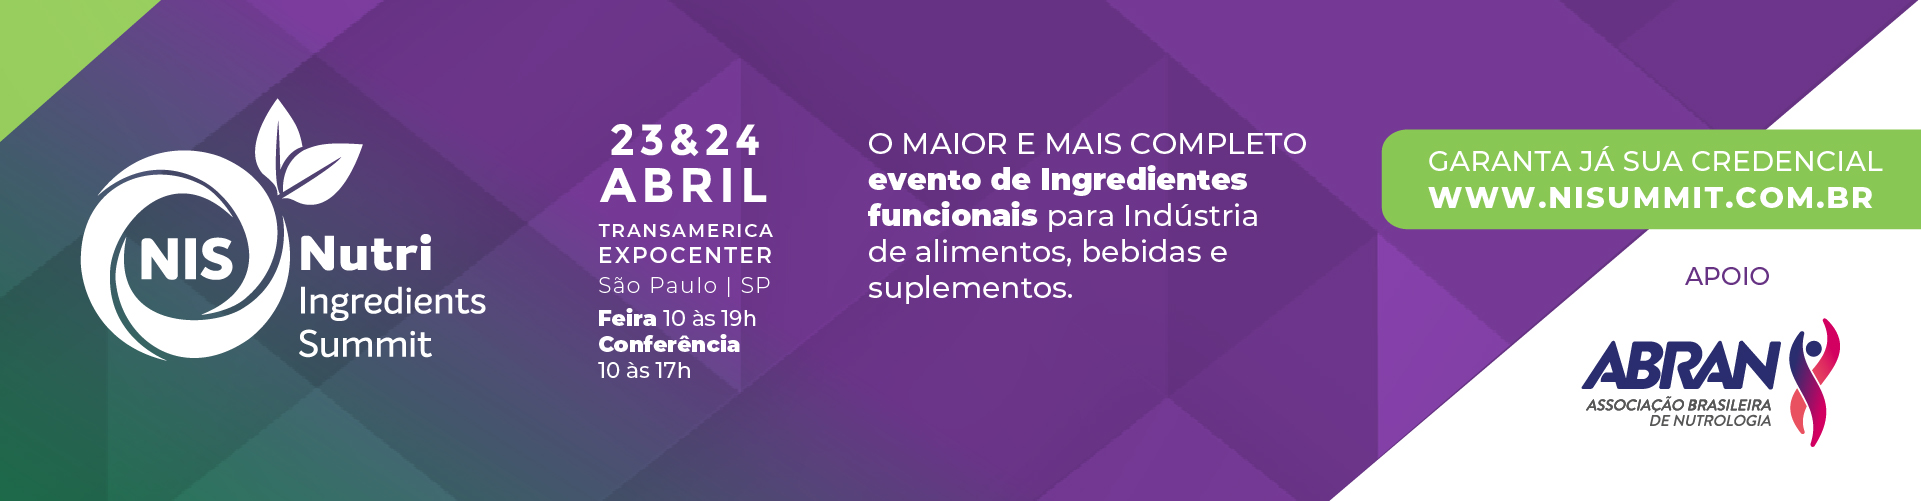 NIS - Nutri Ingredients Summit